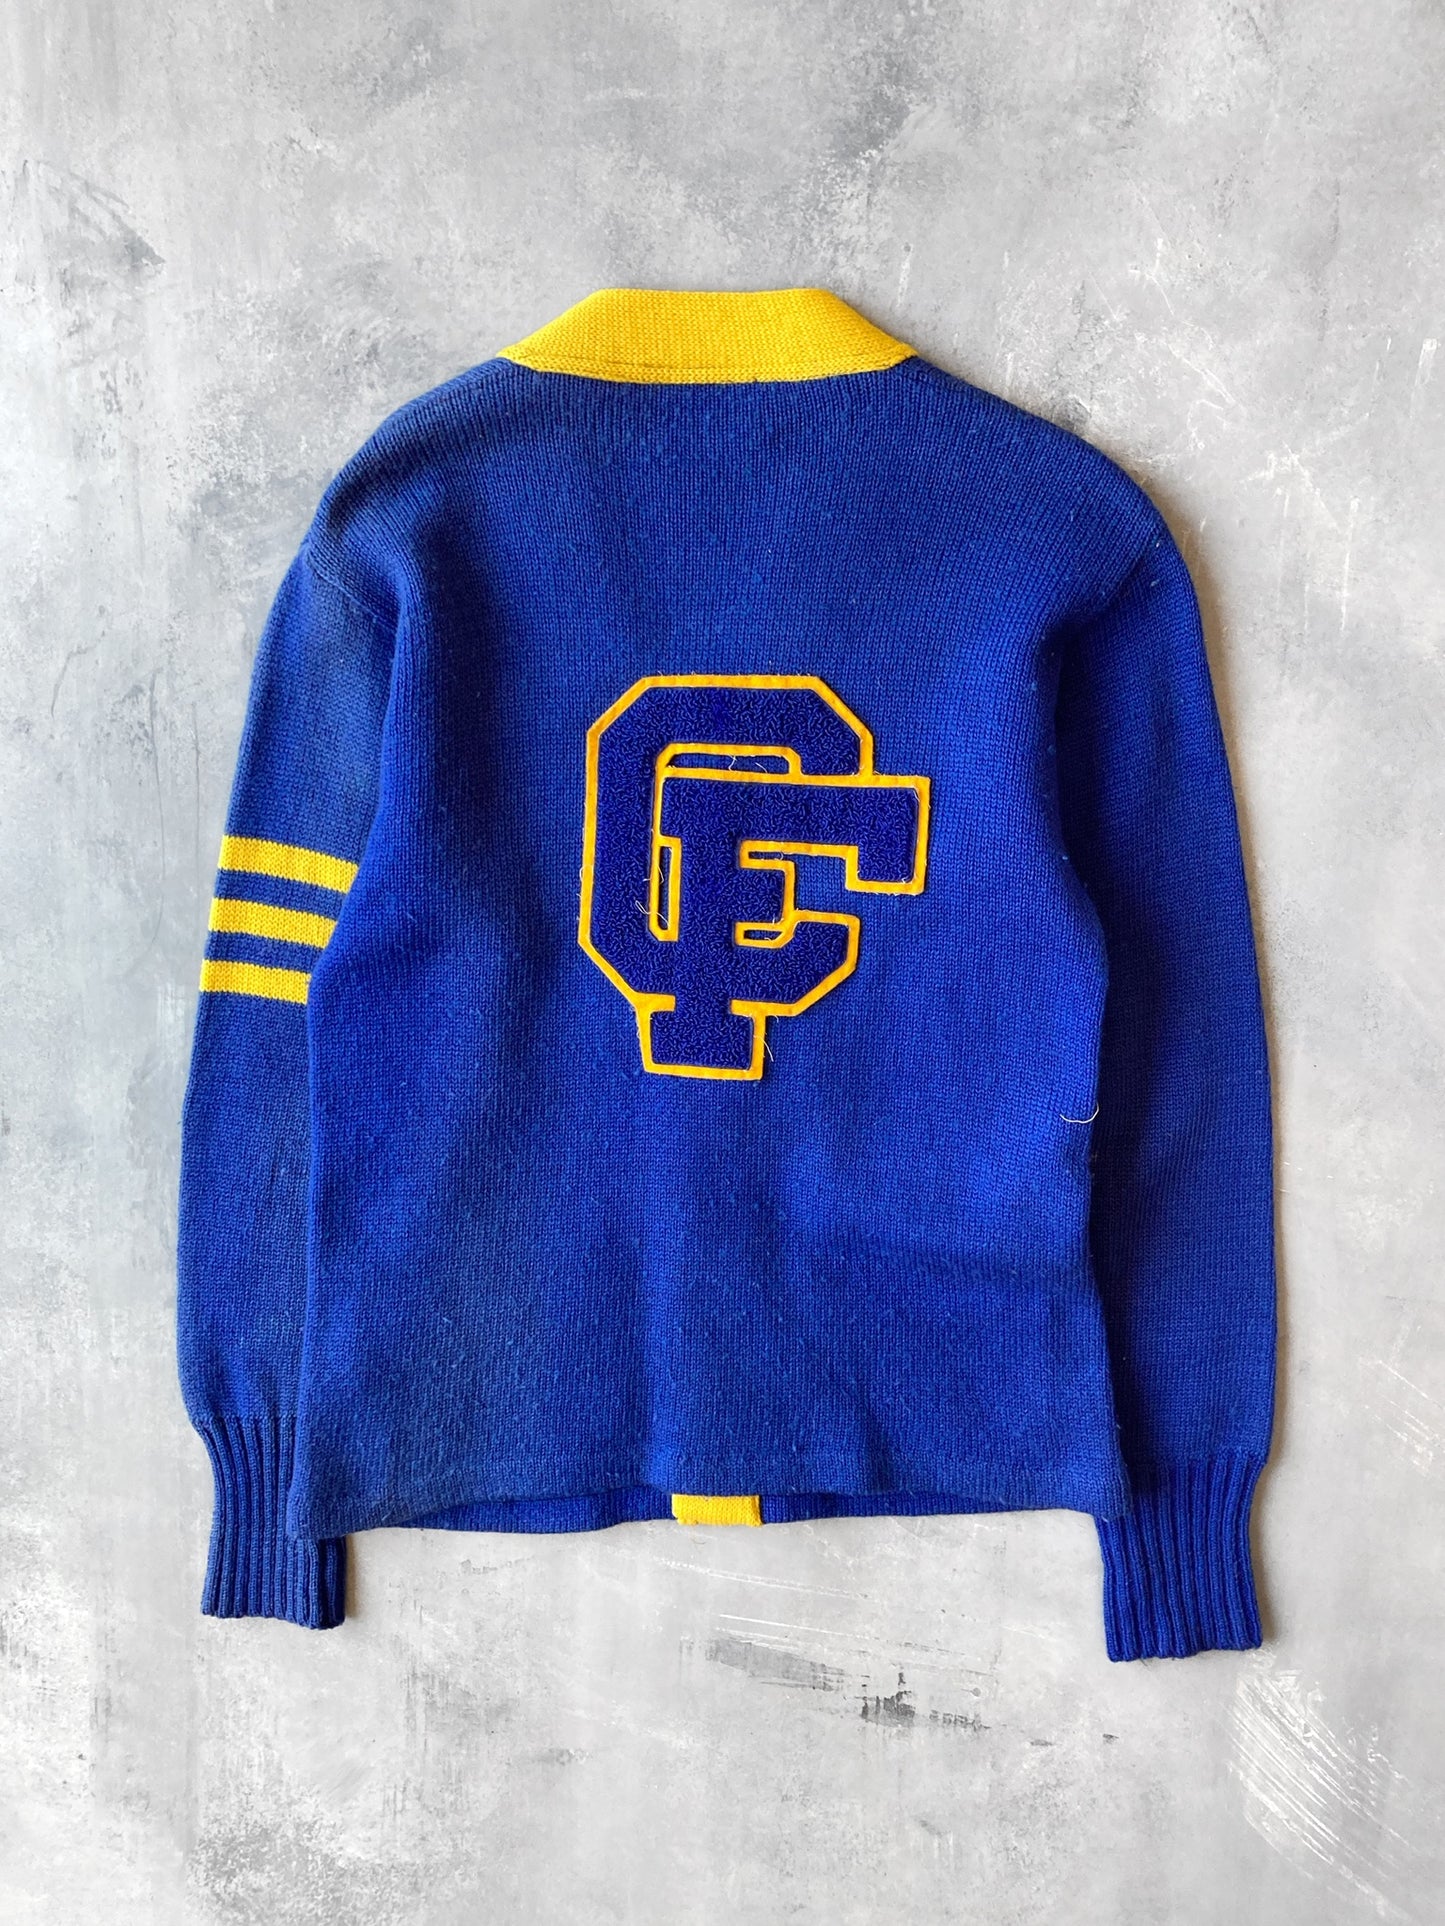 Varsity Sweater 70's - Small